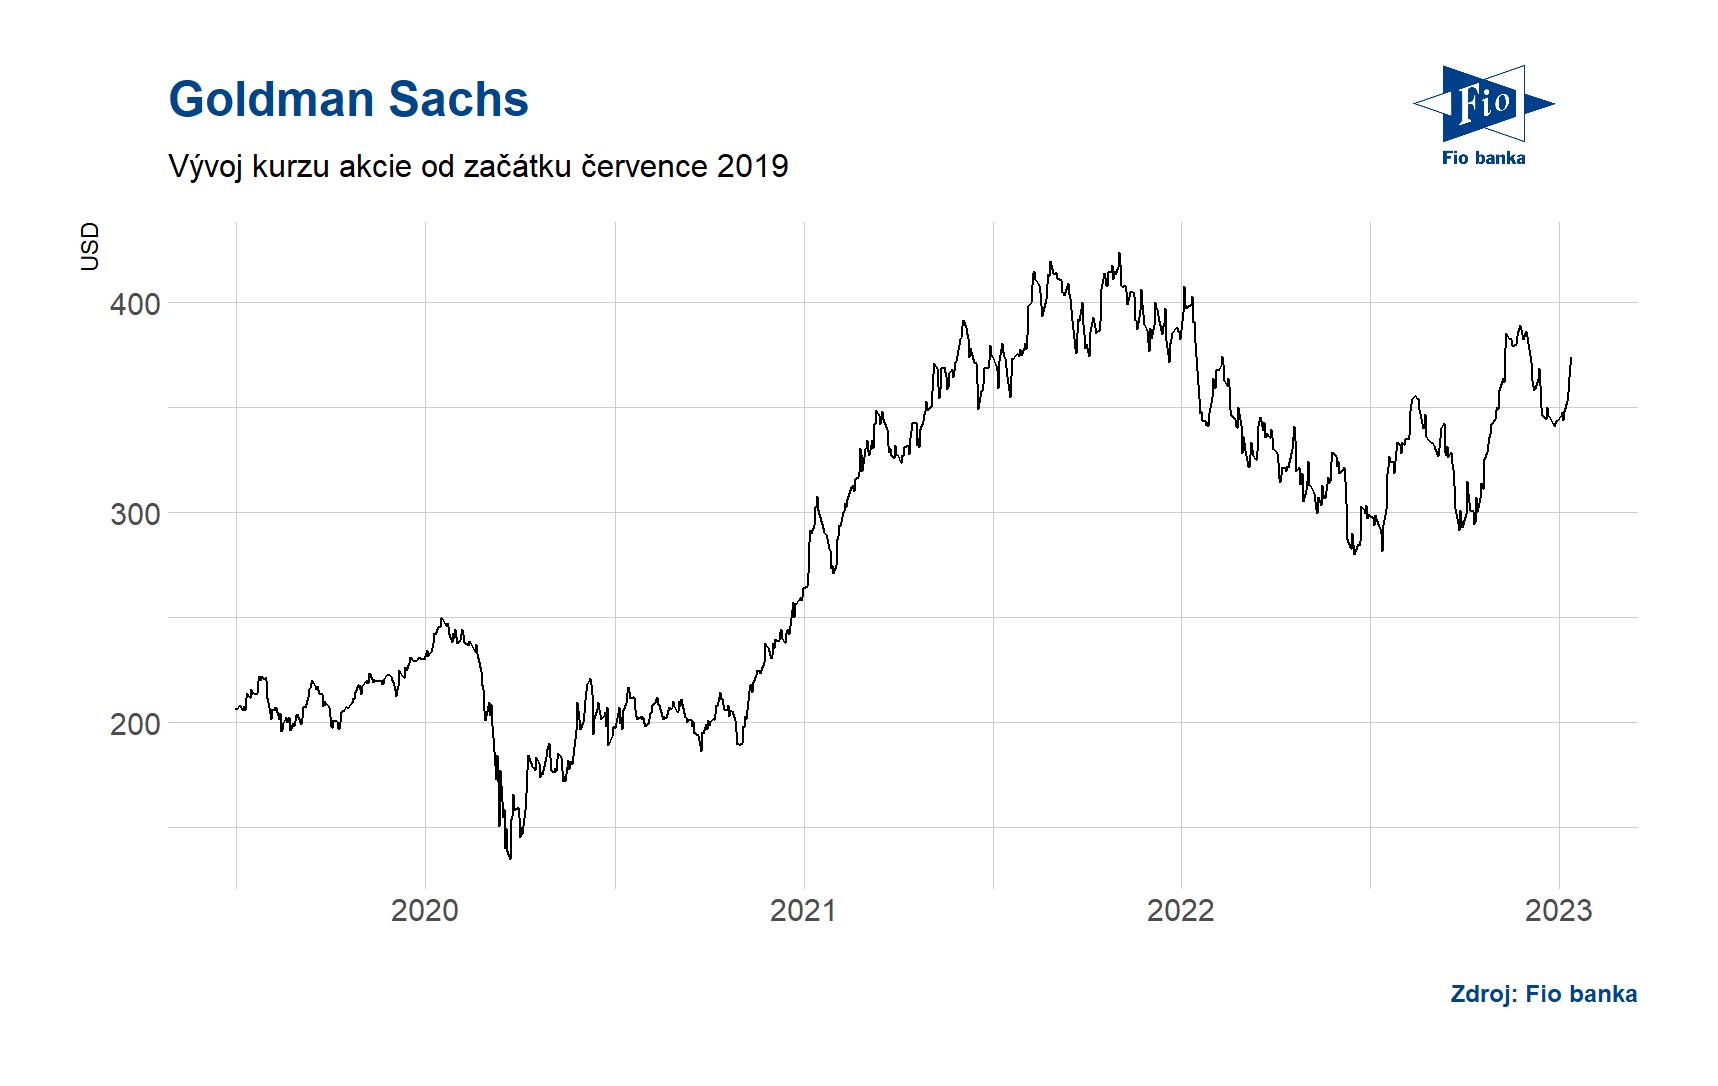 Vývoj ceny akcie Goldman Sachs. Zdroj: Bloomberg